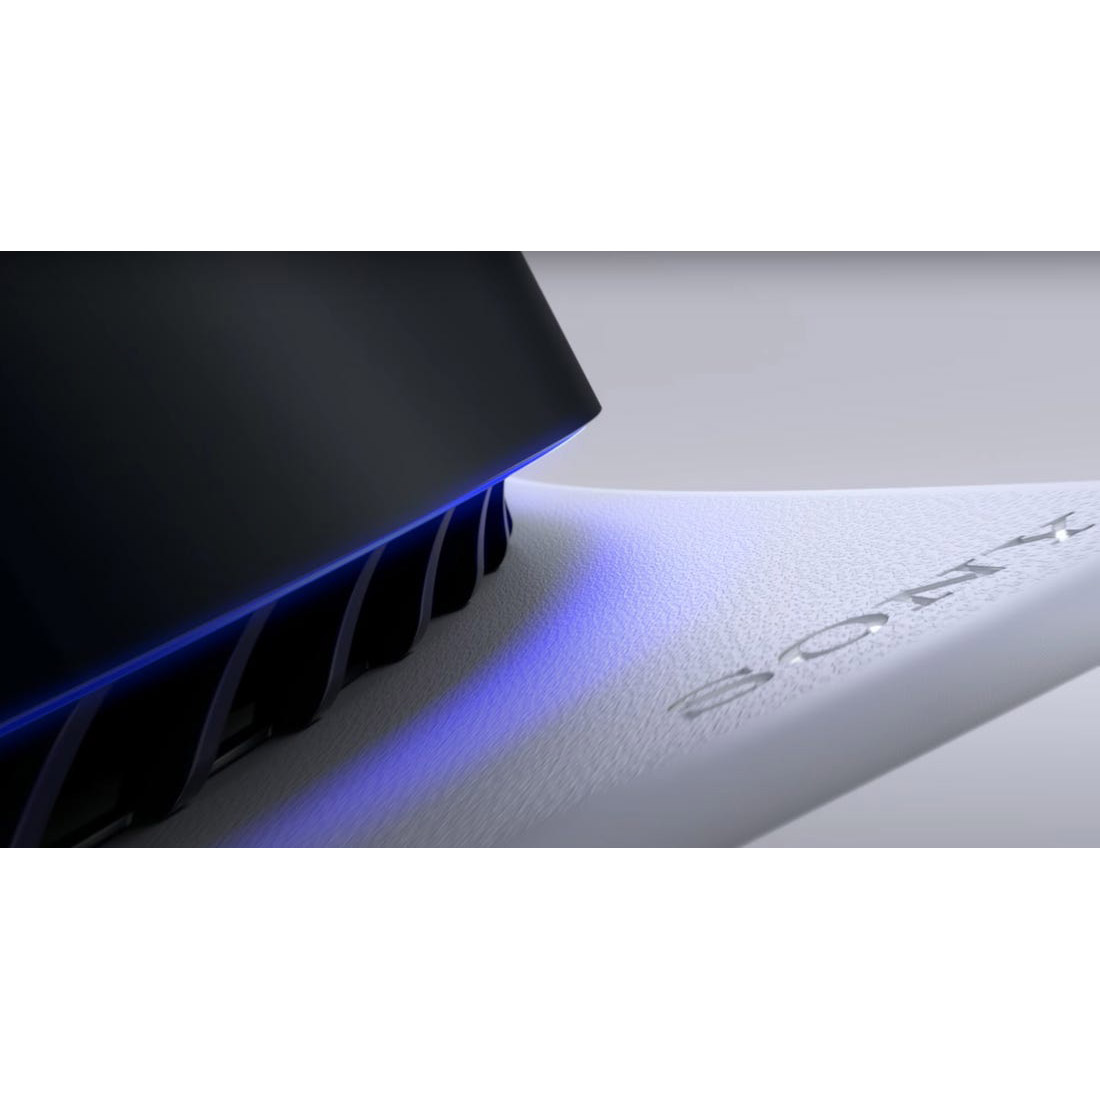 کنسول بازی سونی مدل PlayStation 5 ظرفیت 825 گیگابایت ریجن 1200 آسیا